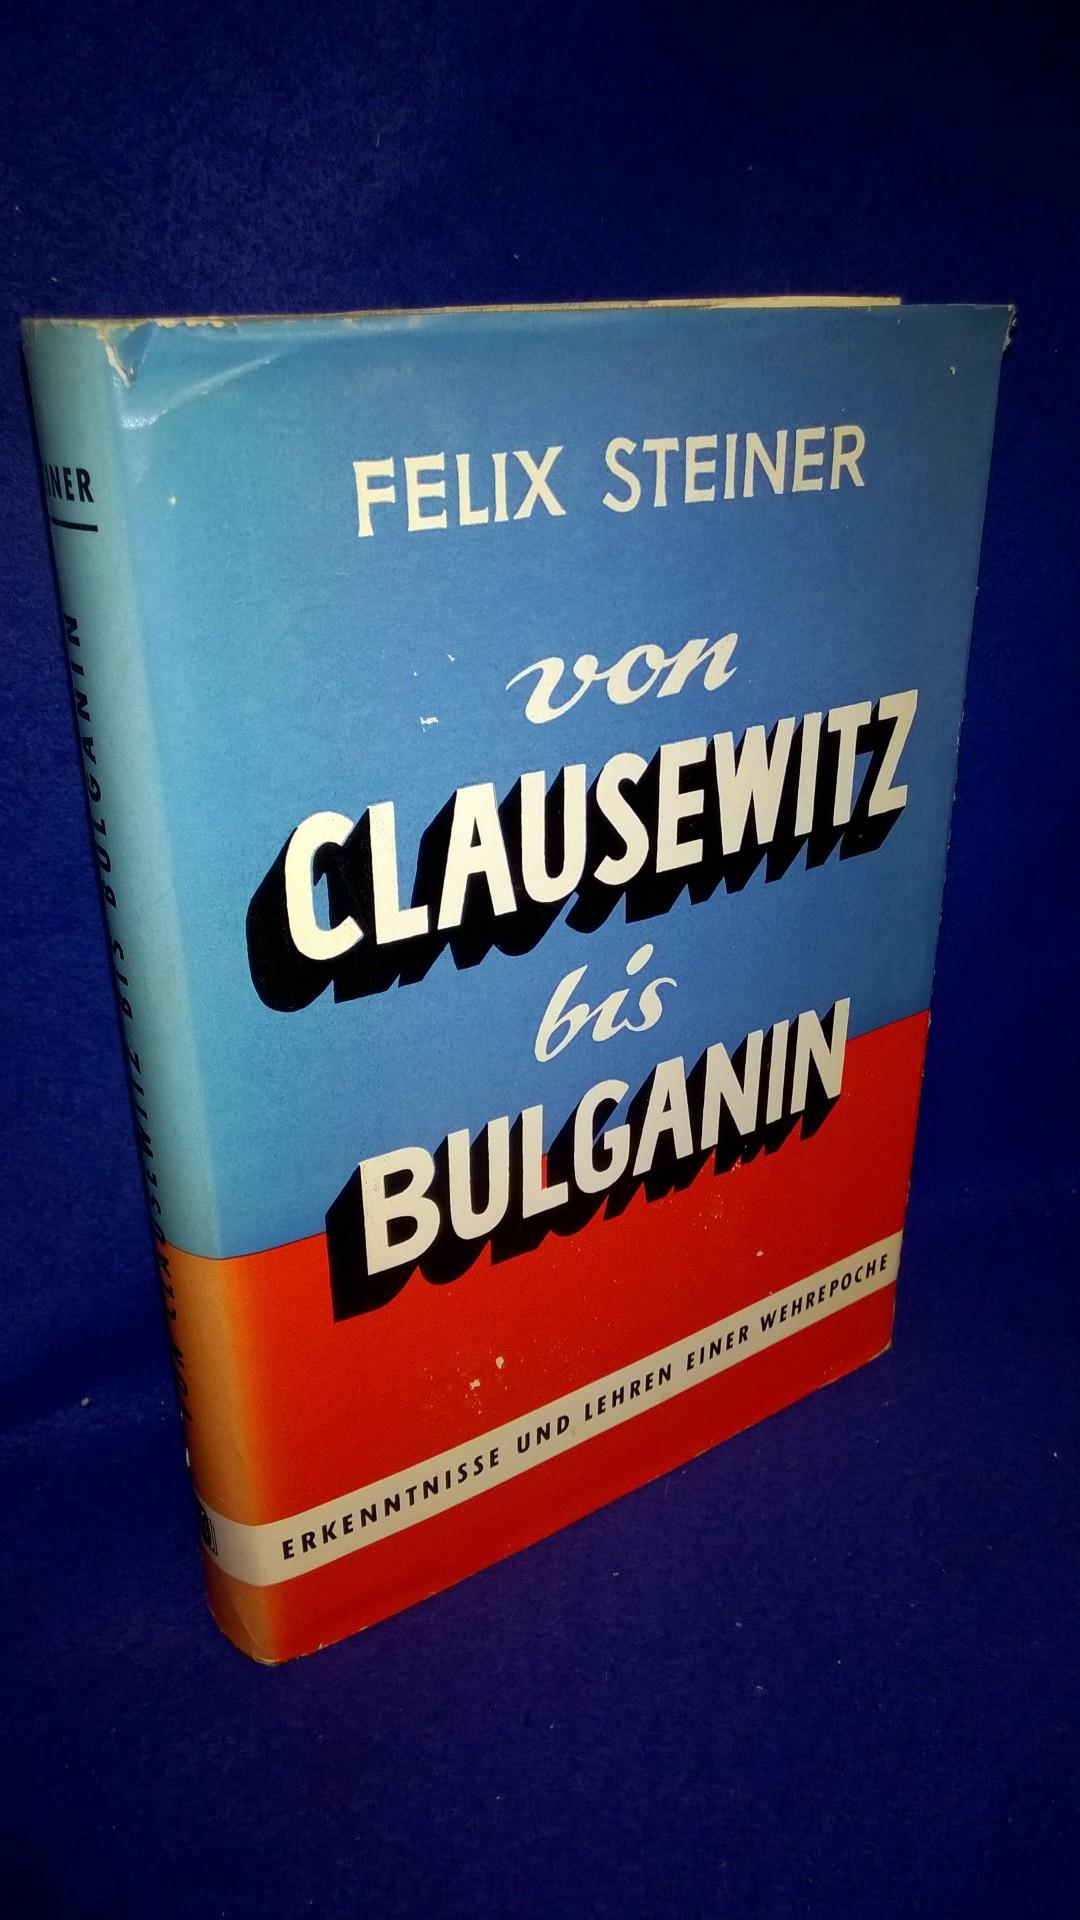 Von Clausewitz bis Bulganin - Erkenntnisse und Lehren einer Wehrepoche.